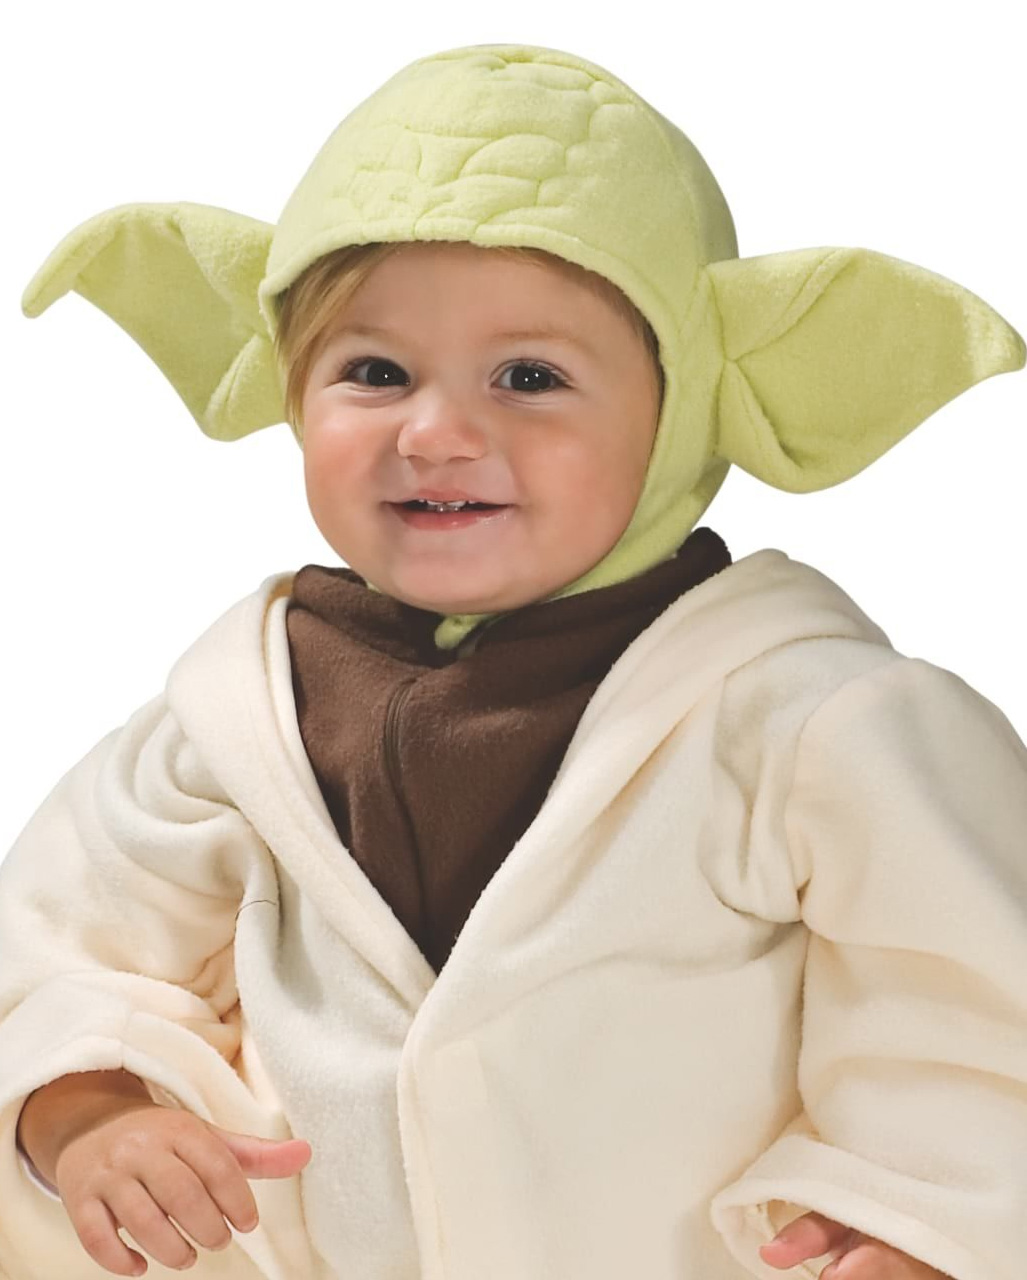 Original Lizenz Star Wars Yoda Kinder Kostüm für Fasching Karneval 